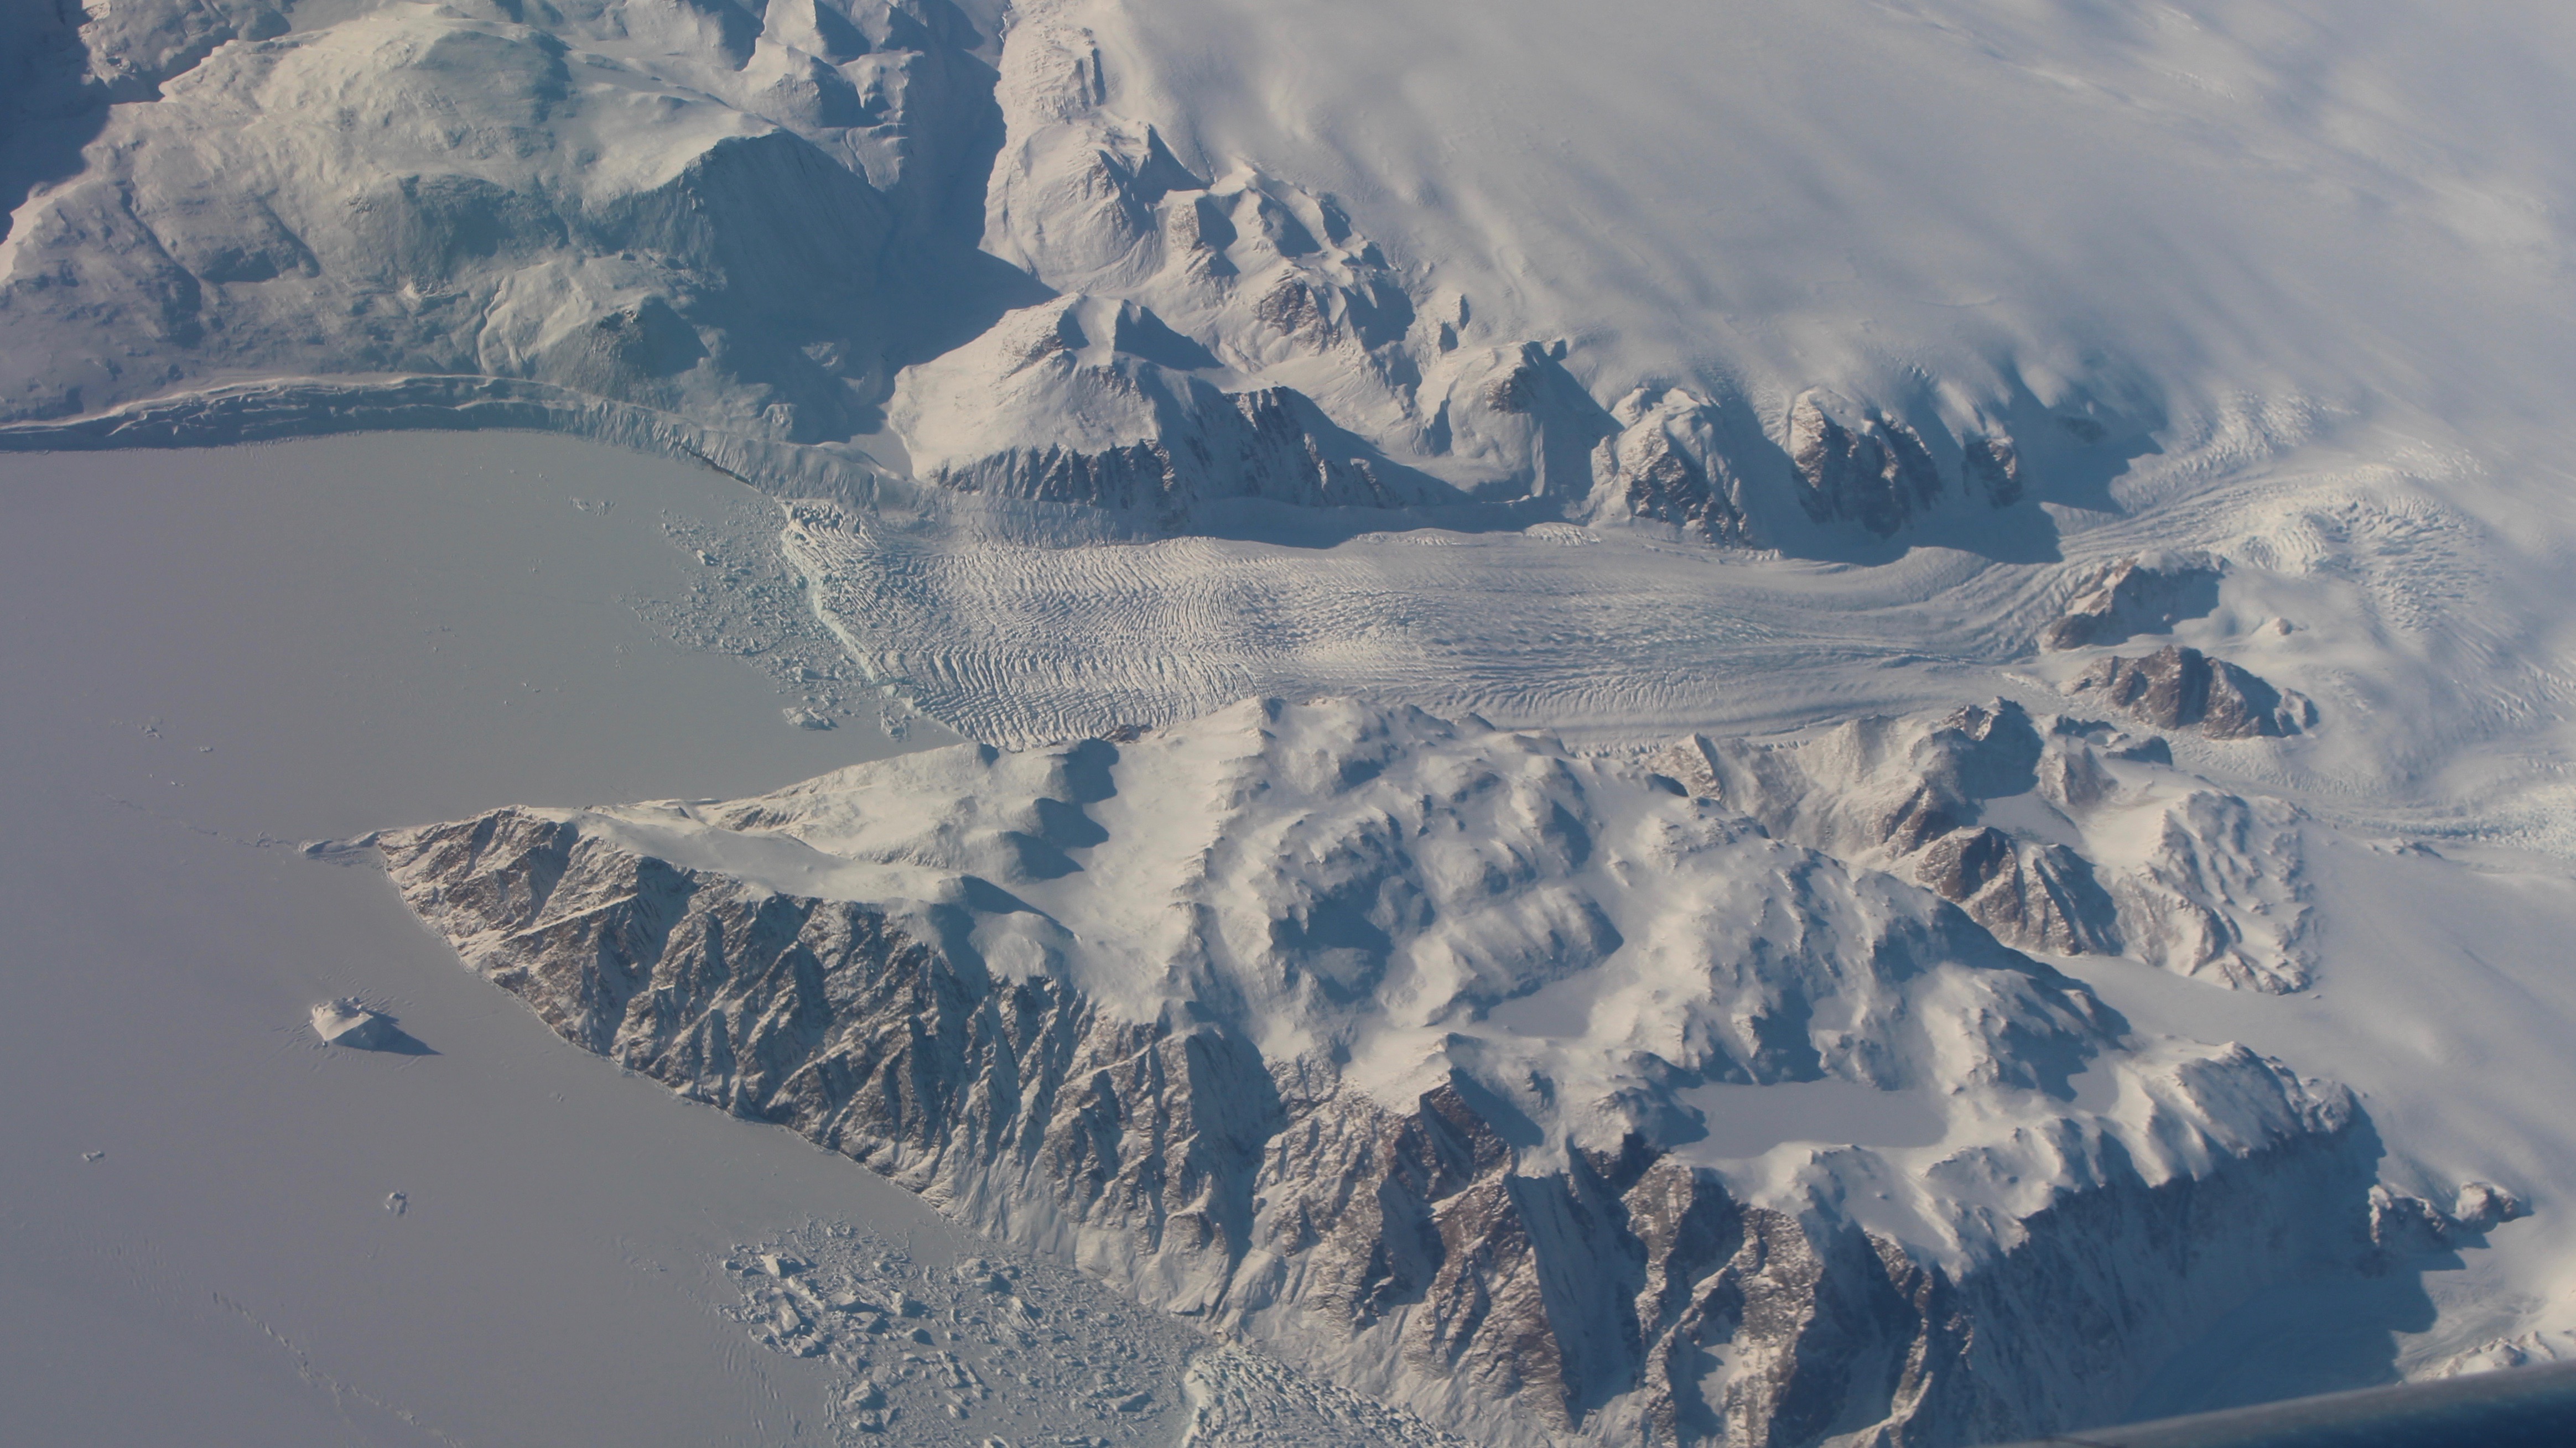 A Greenland glacier.